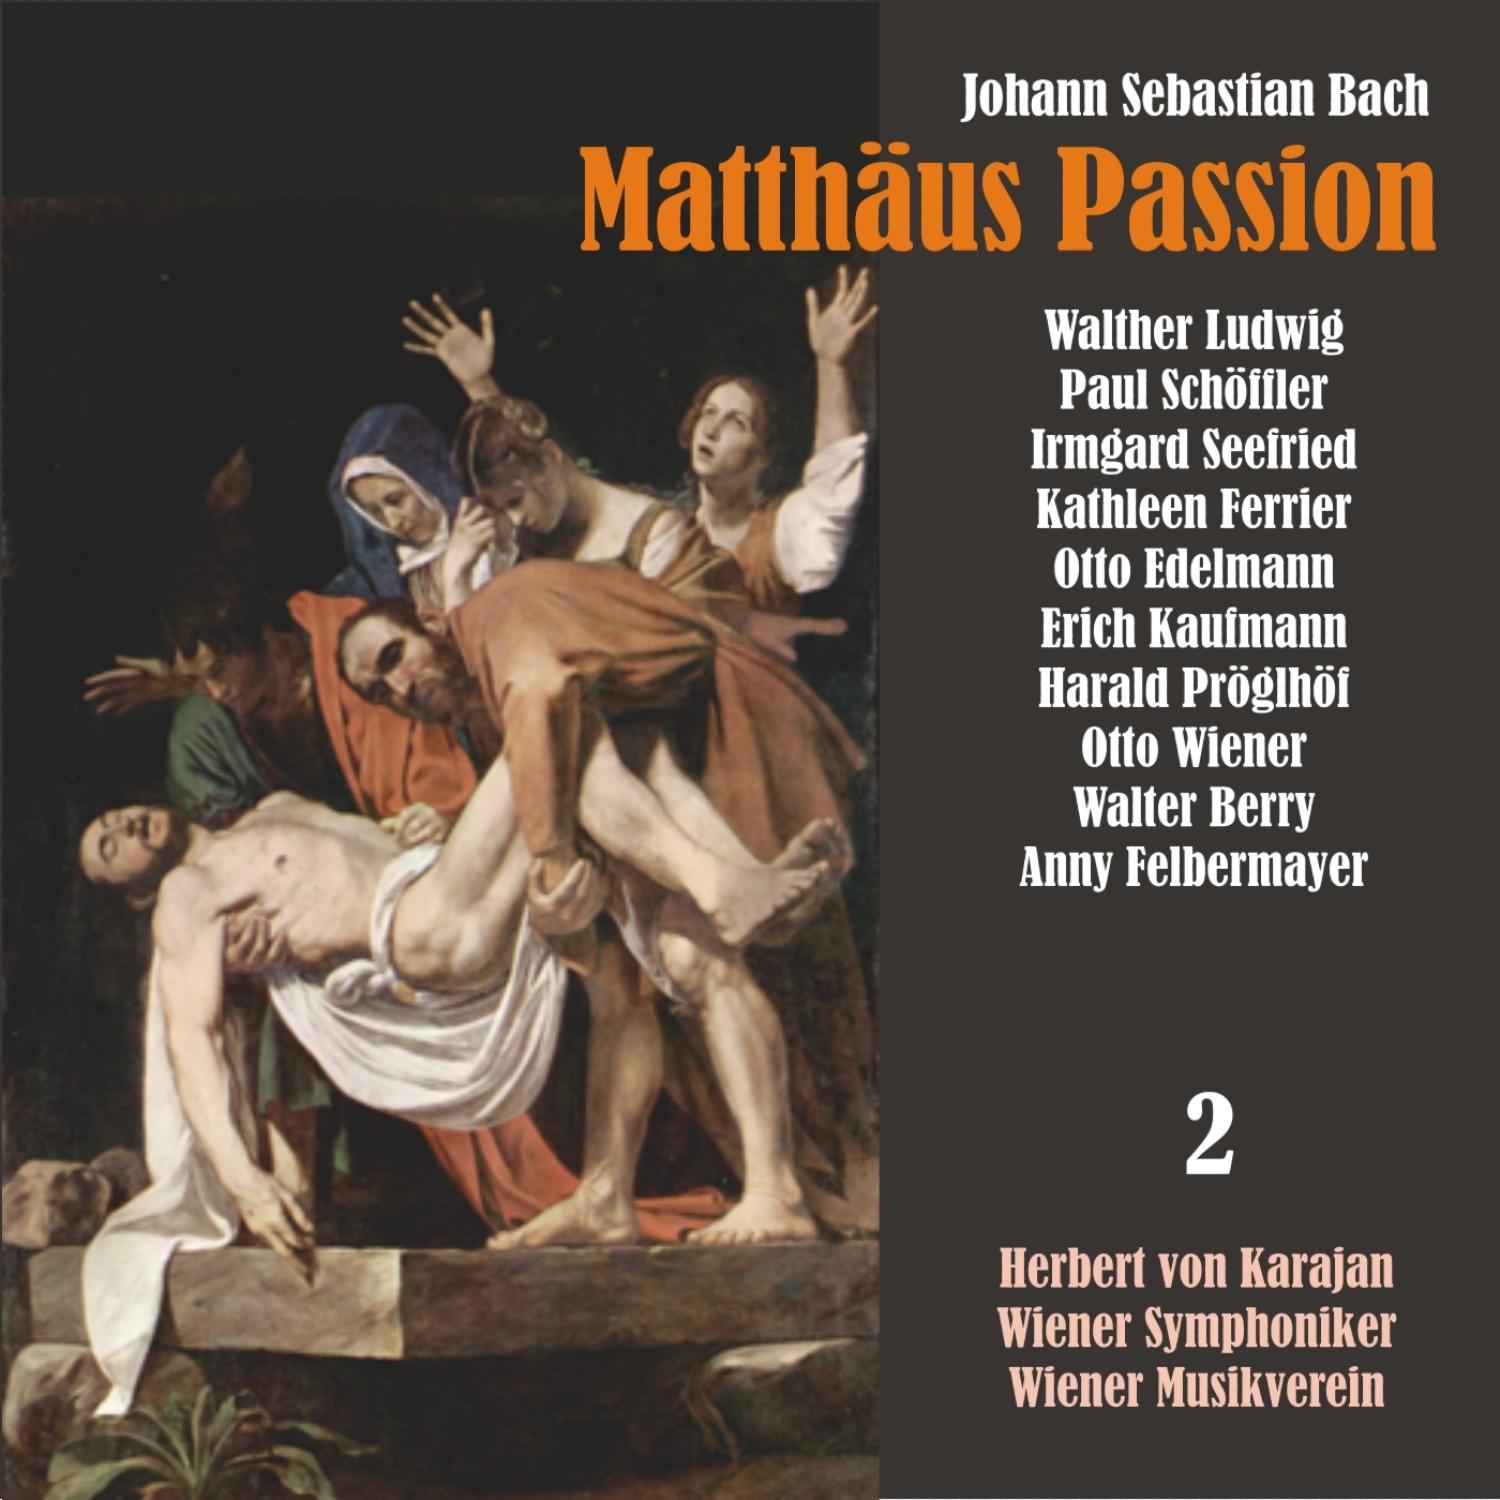 Matth us Passion, BWV 244: " Ach! nun ist mein Jesu hsn!"